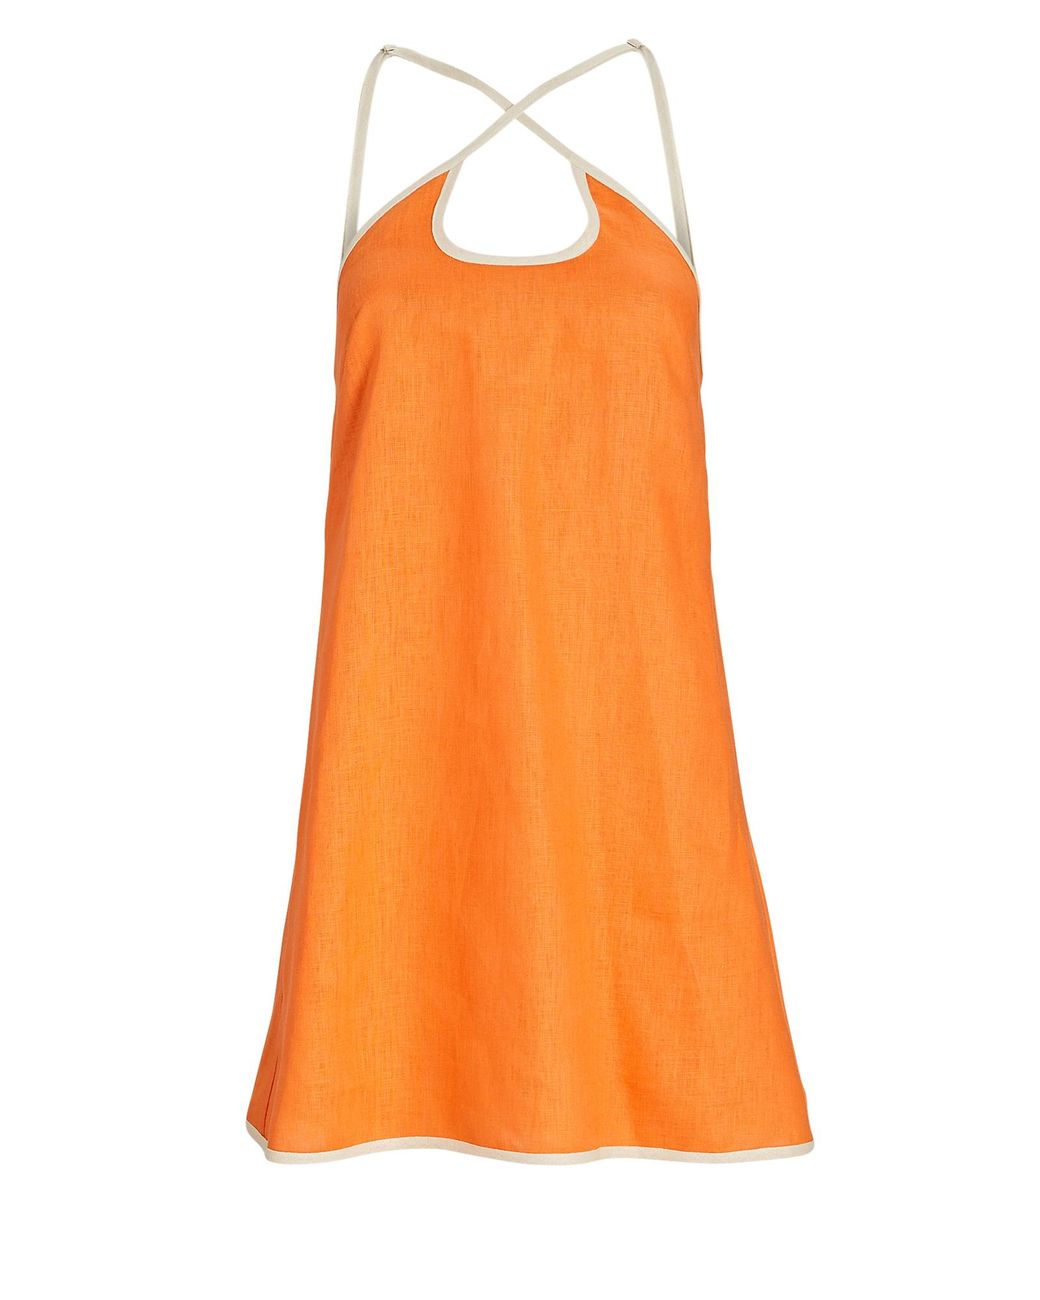 Matthew Bruch Linen Cut-out Mini Dress in Orange | Lyst